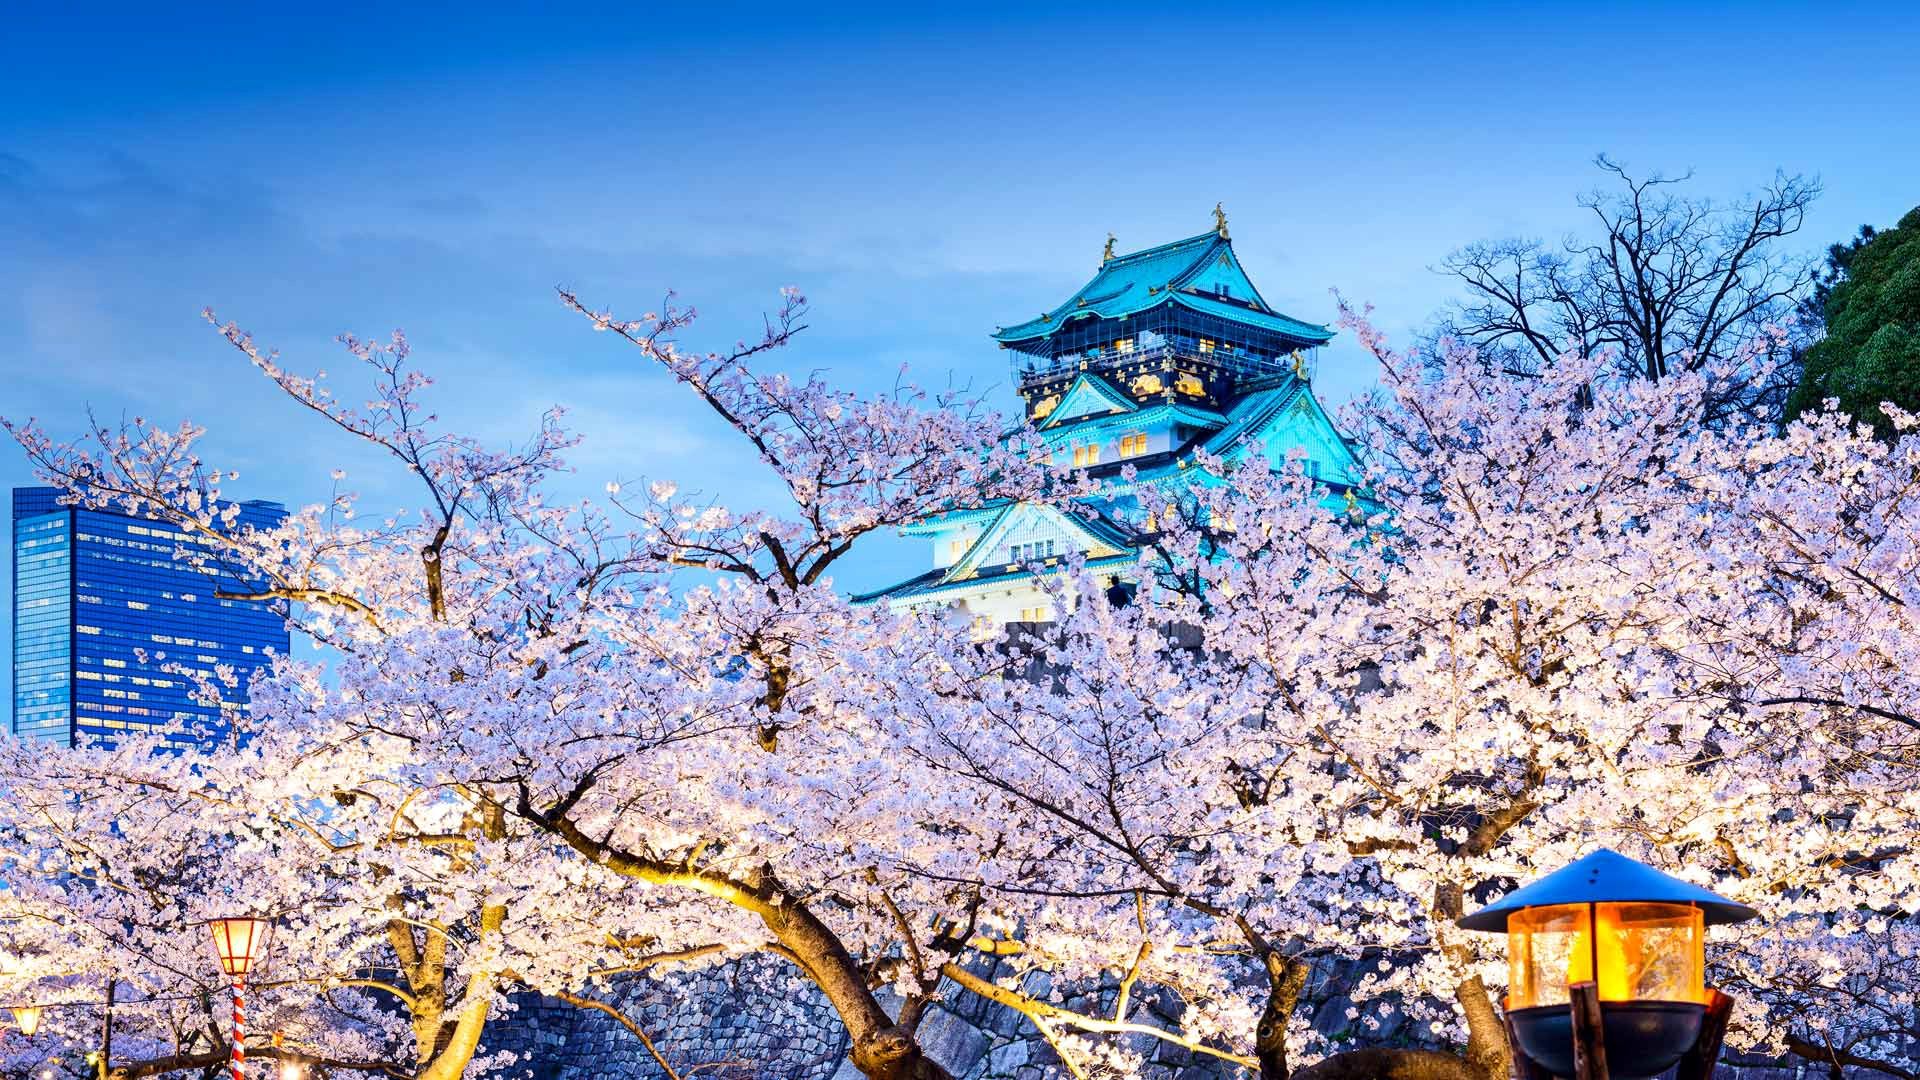 满树烂漫的日本樱花美景壁纸,散步在街道显得